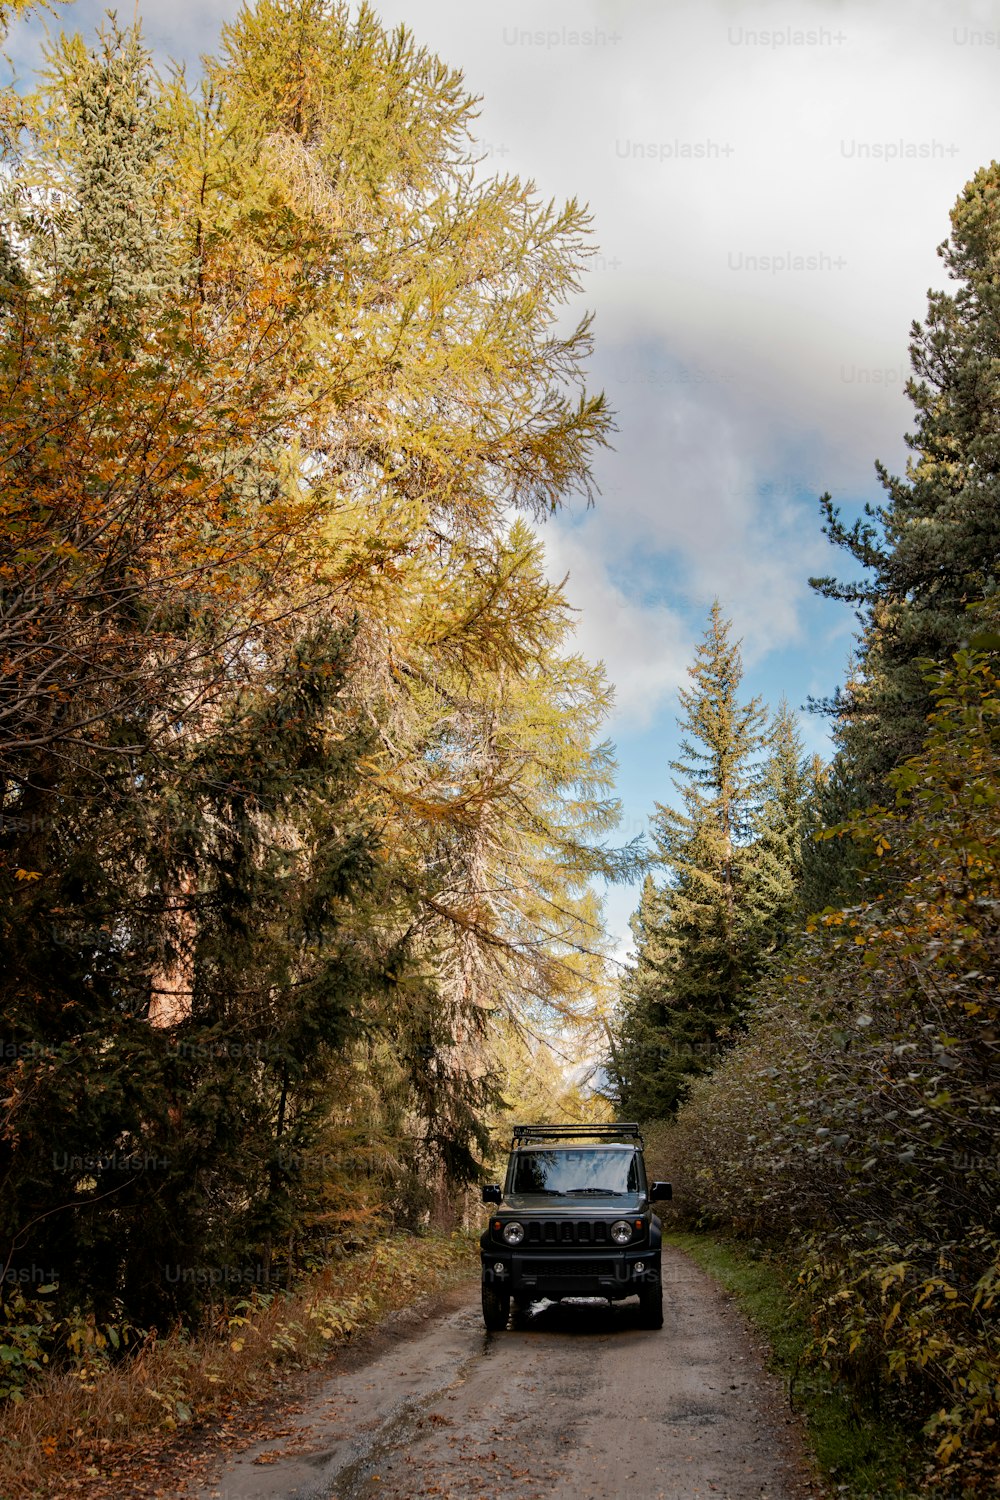 un camion che percorre una strada sterrata circondata da alberi